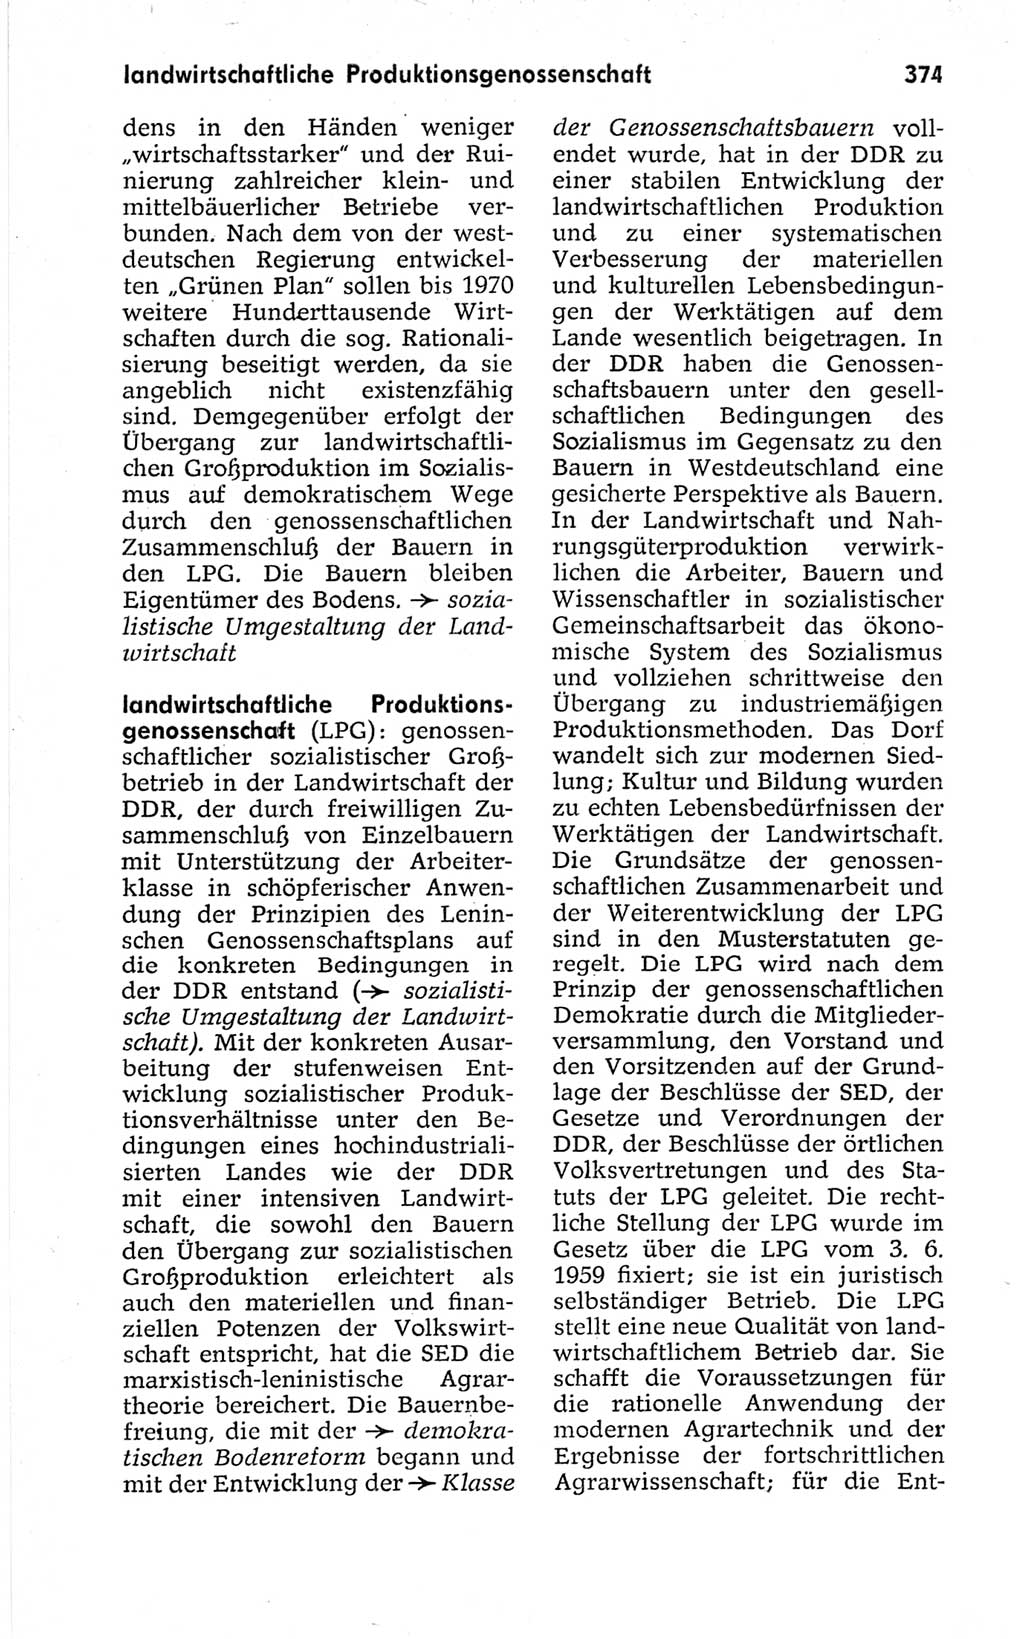 Kleines politisches Wörterbuch [Deutsche Demokratische Republik (DDR)] 1967, Seite 374 (Kl. pol. Wb. DDR 1967, S. 374)